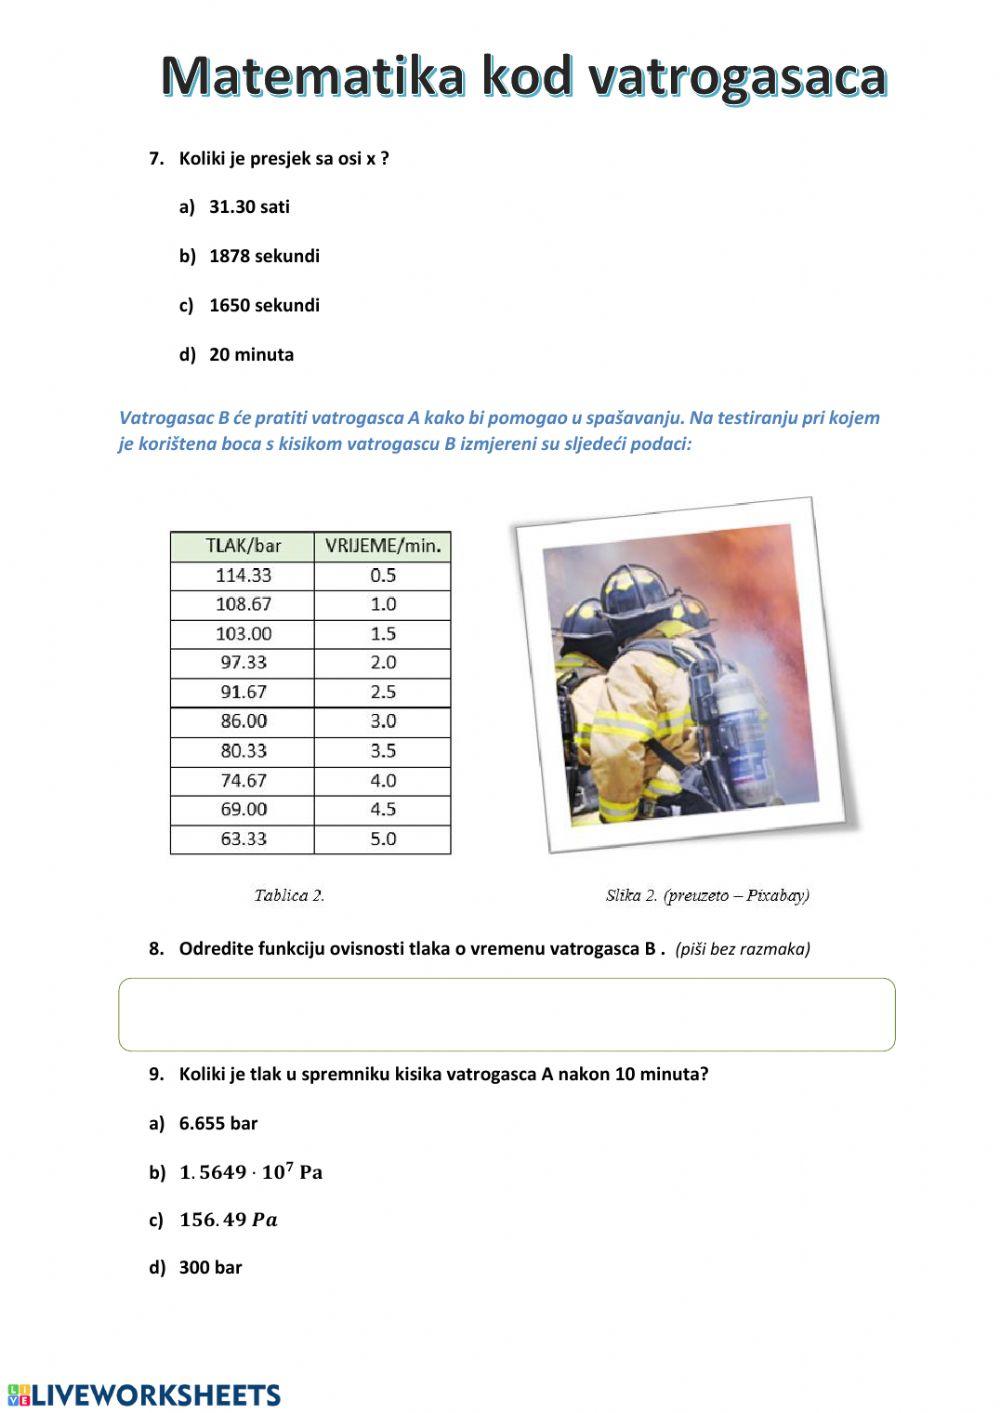 Matematika kod vatrogasaca